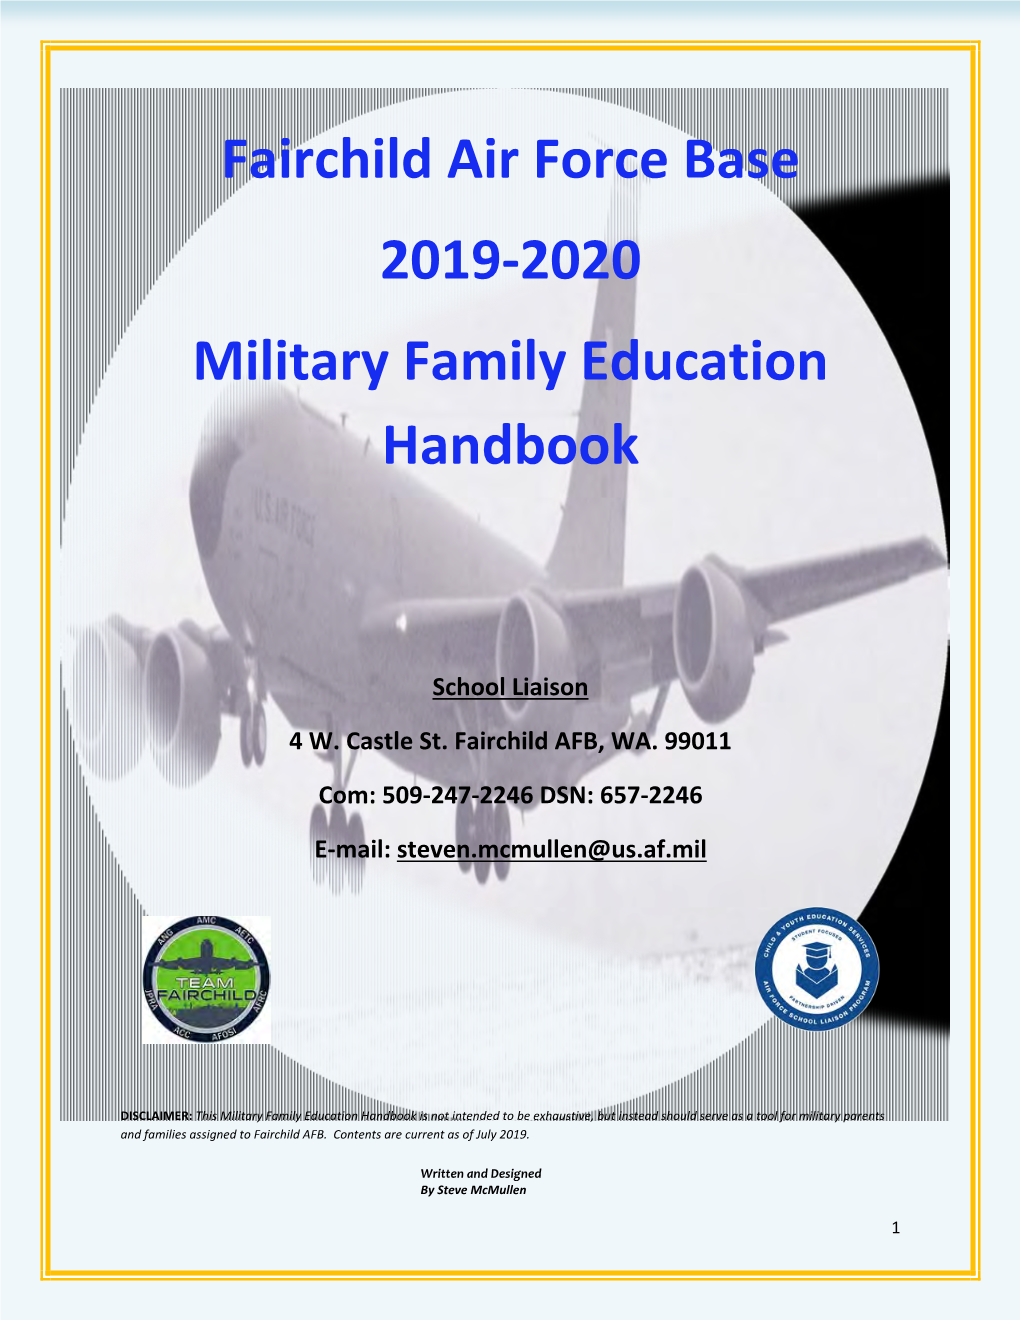 Fairchild Air Force Base 2019-2020 Military Family Education Handbook